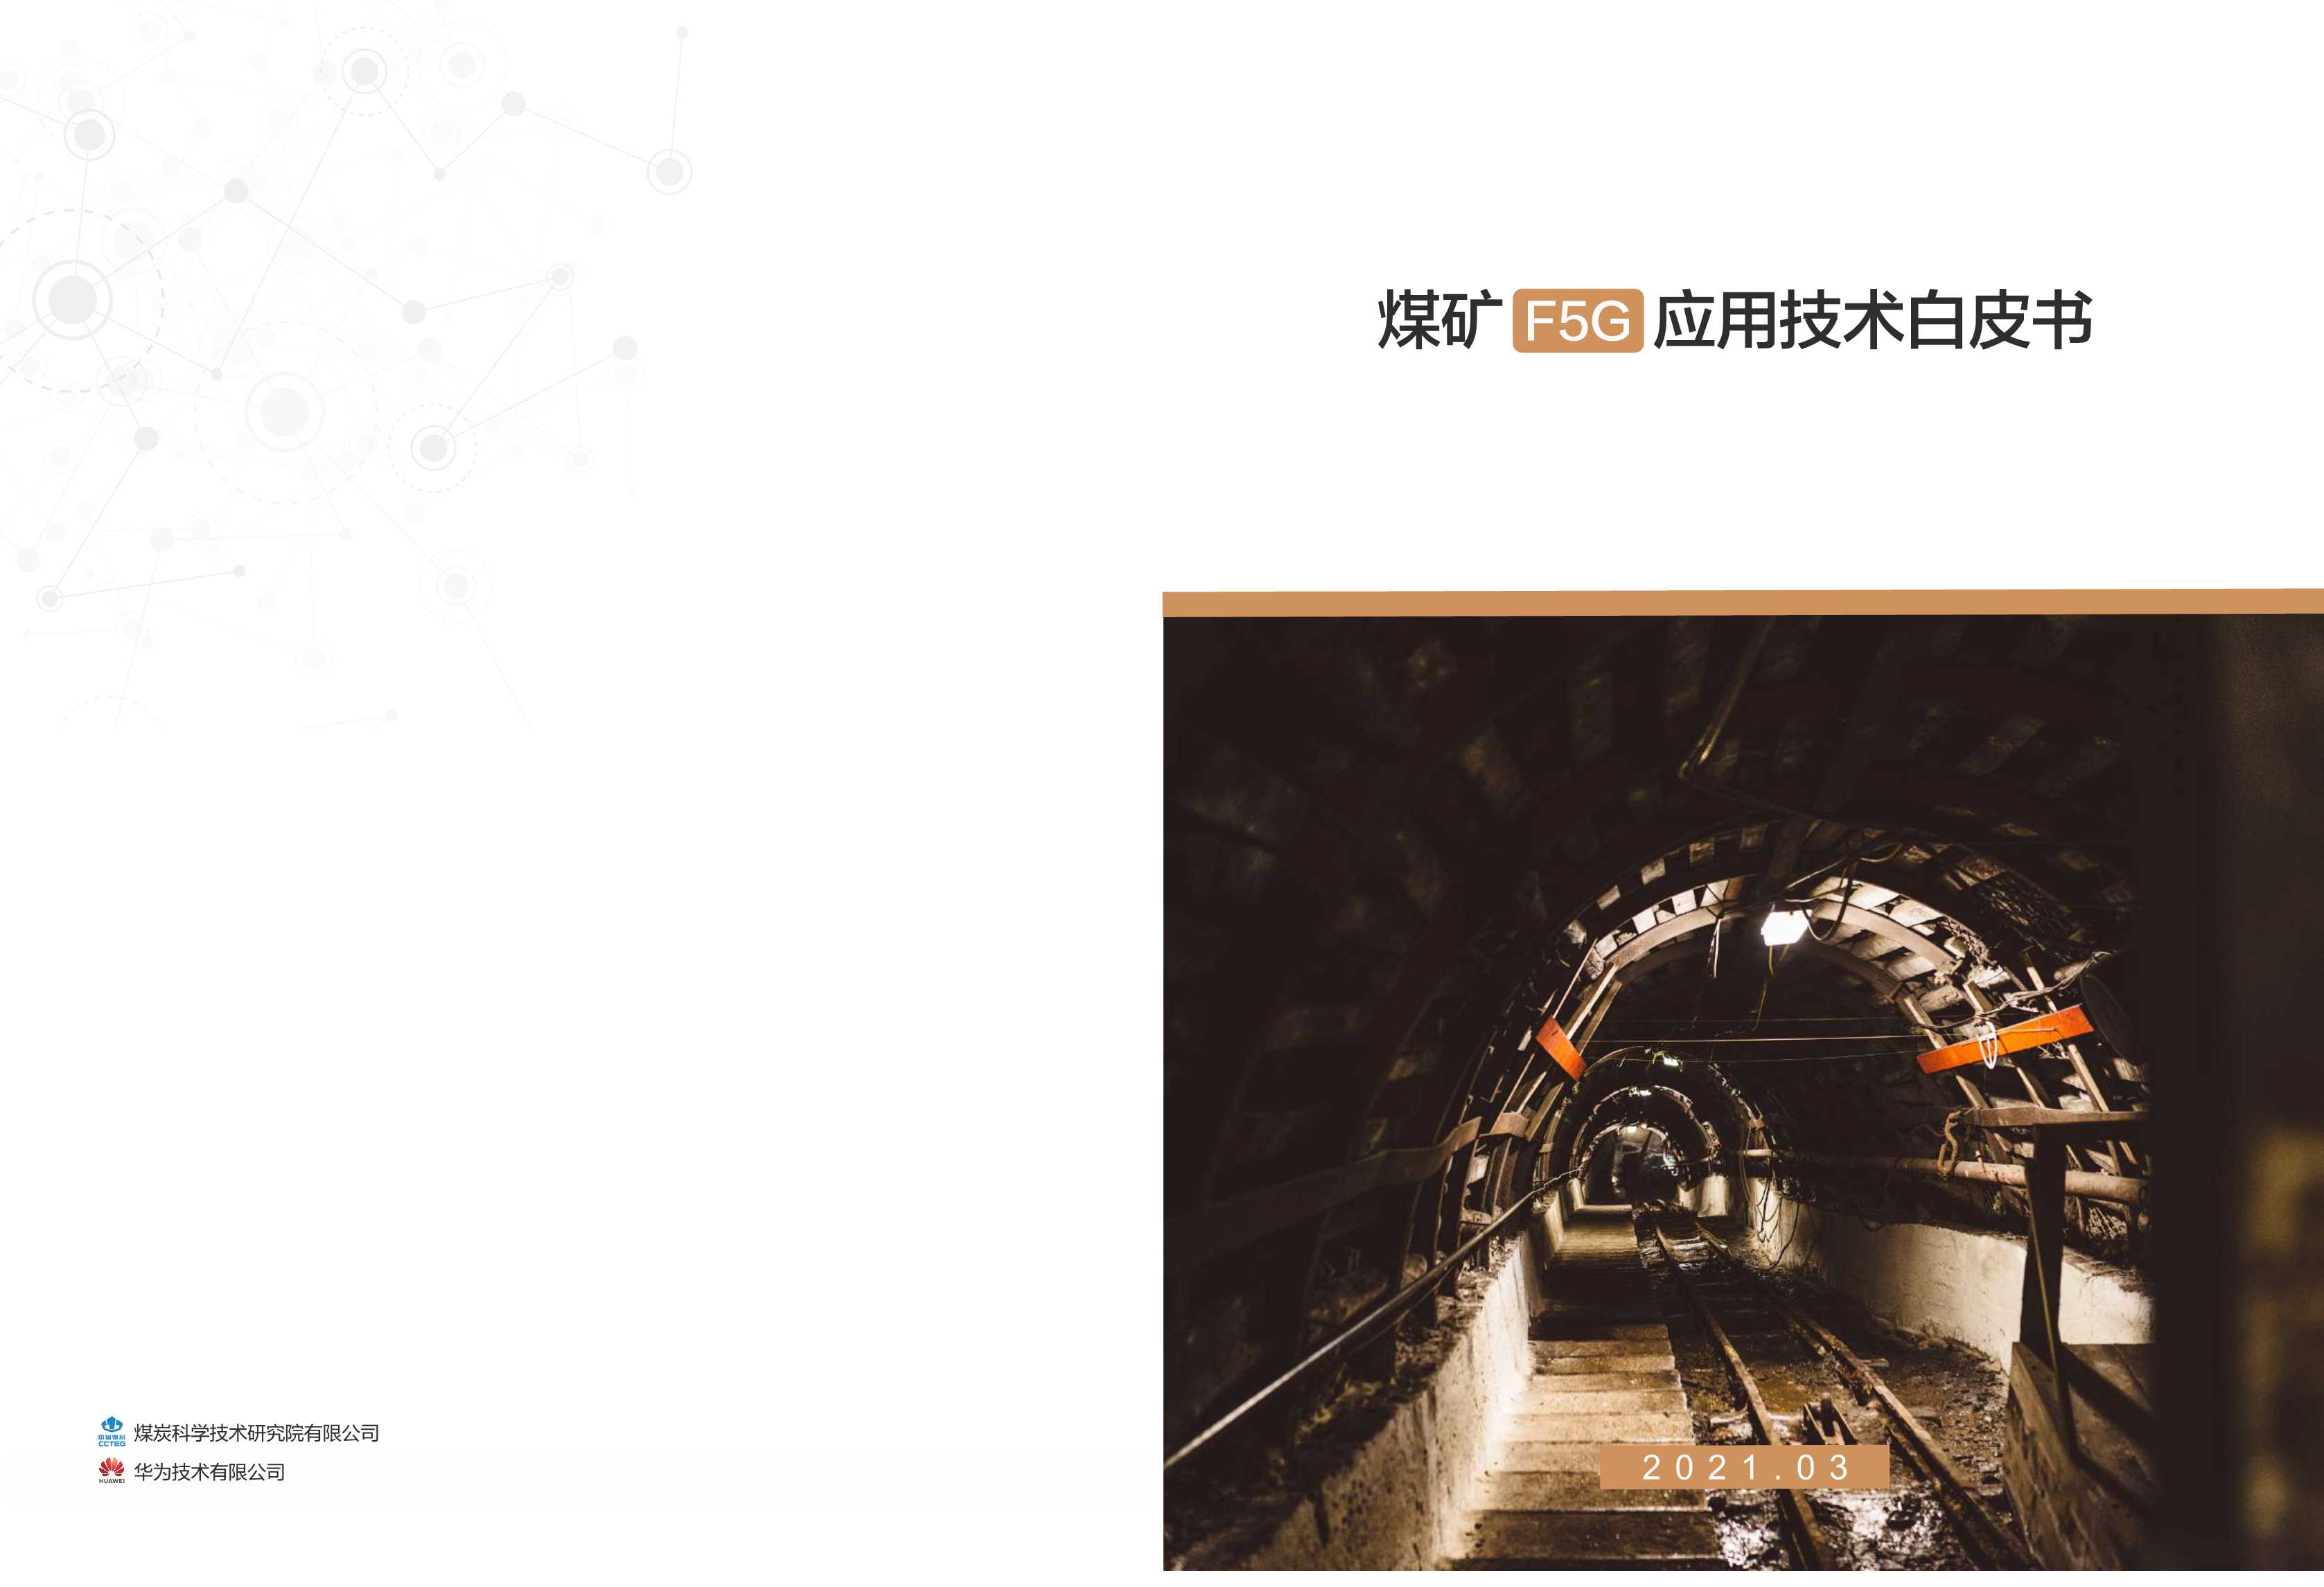 华为-煤矿F5G应用技术白皮书-2021.04-8页